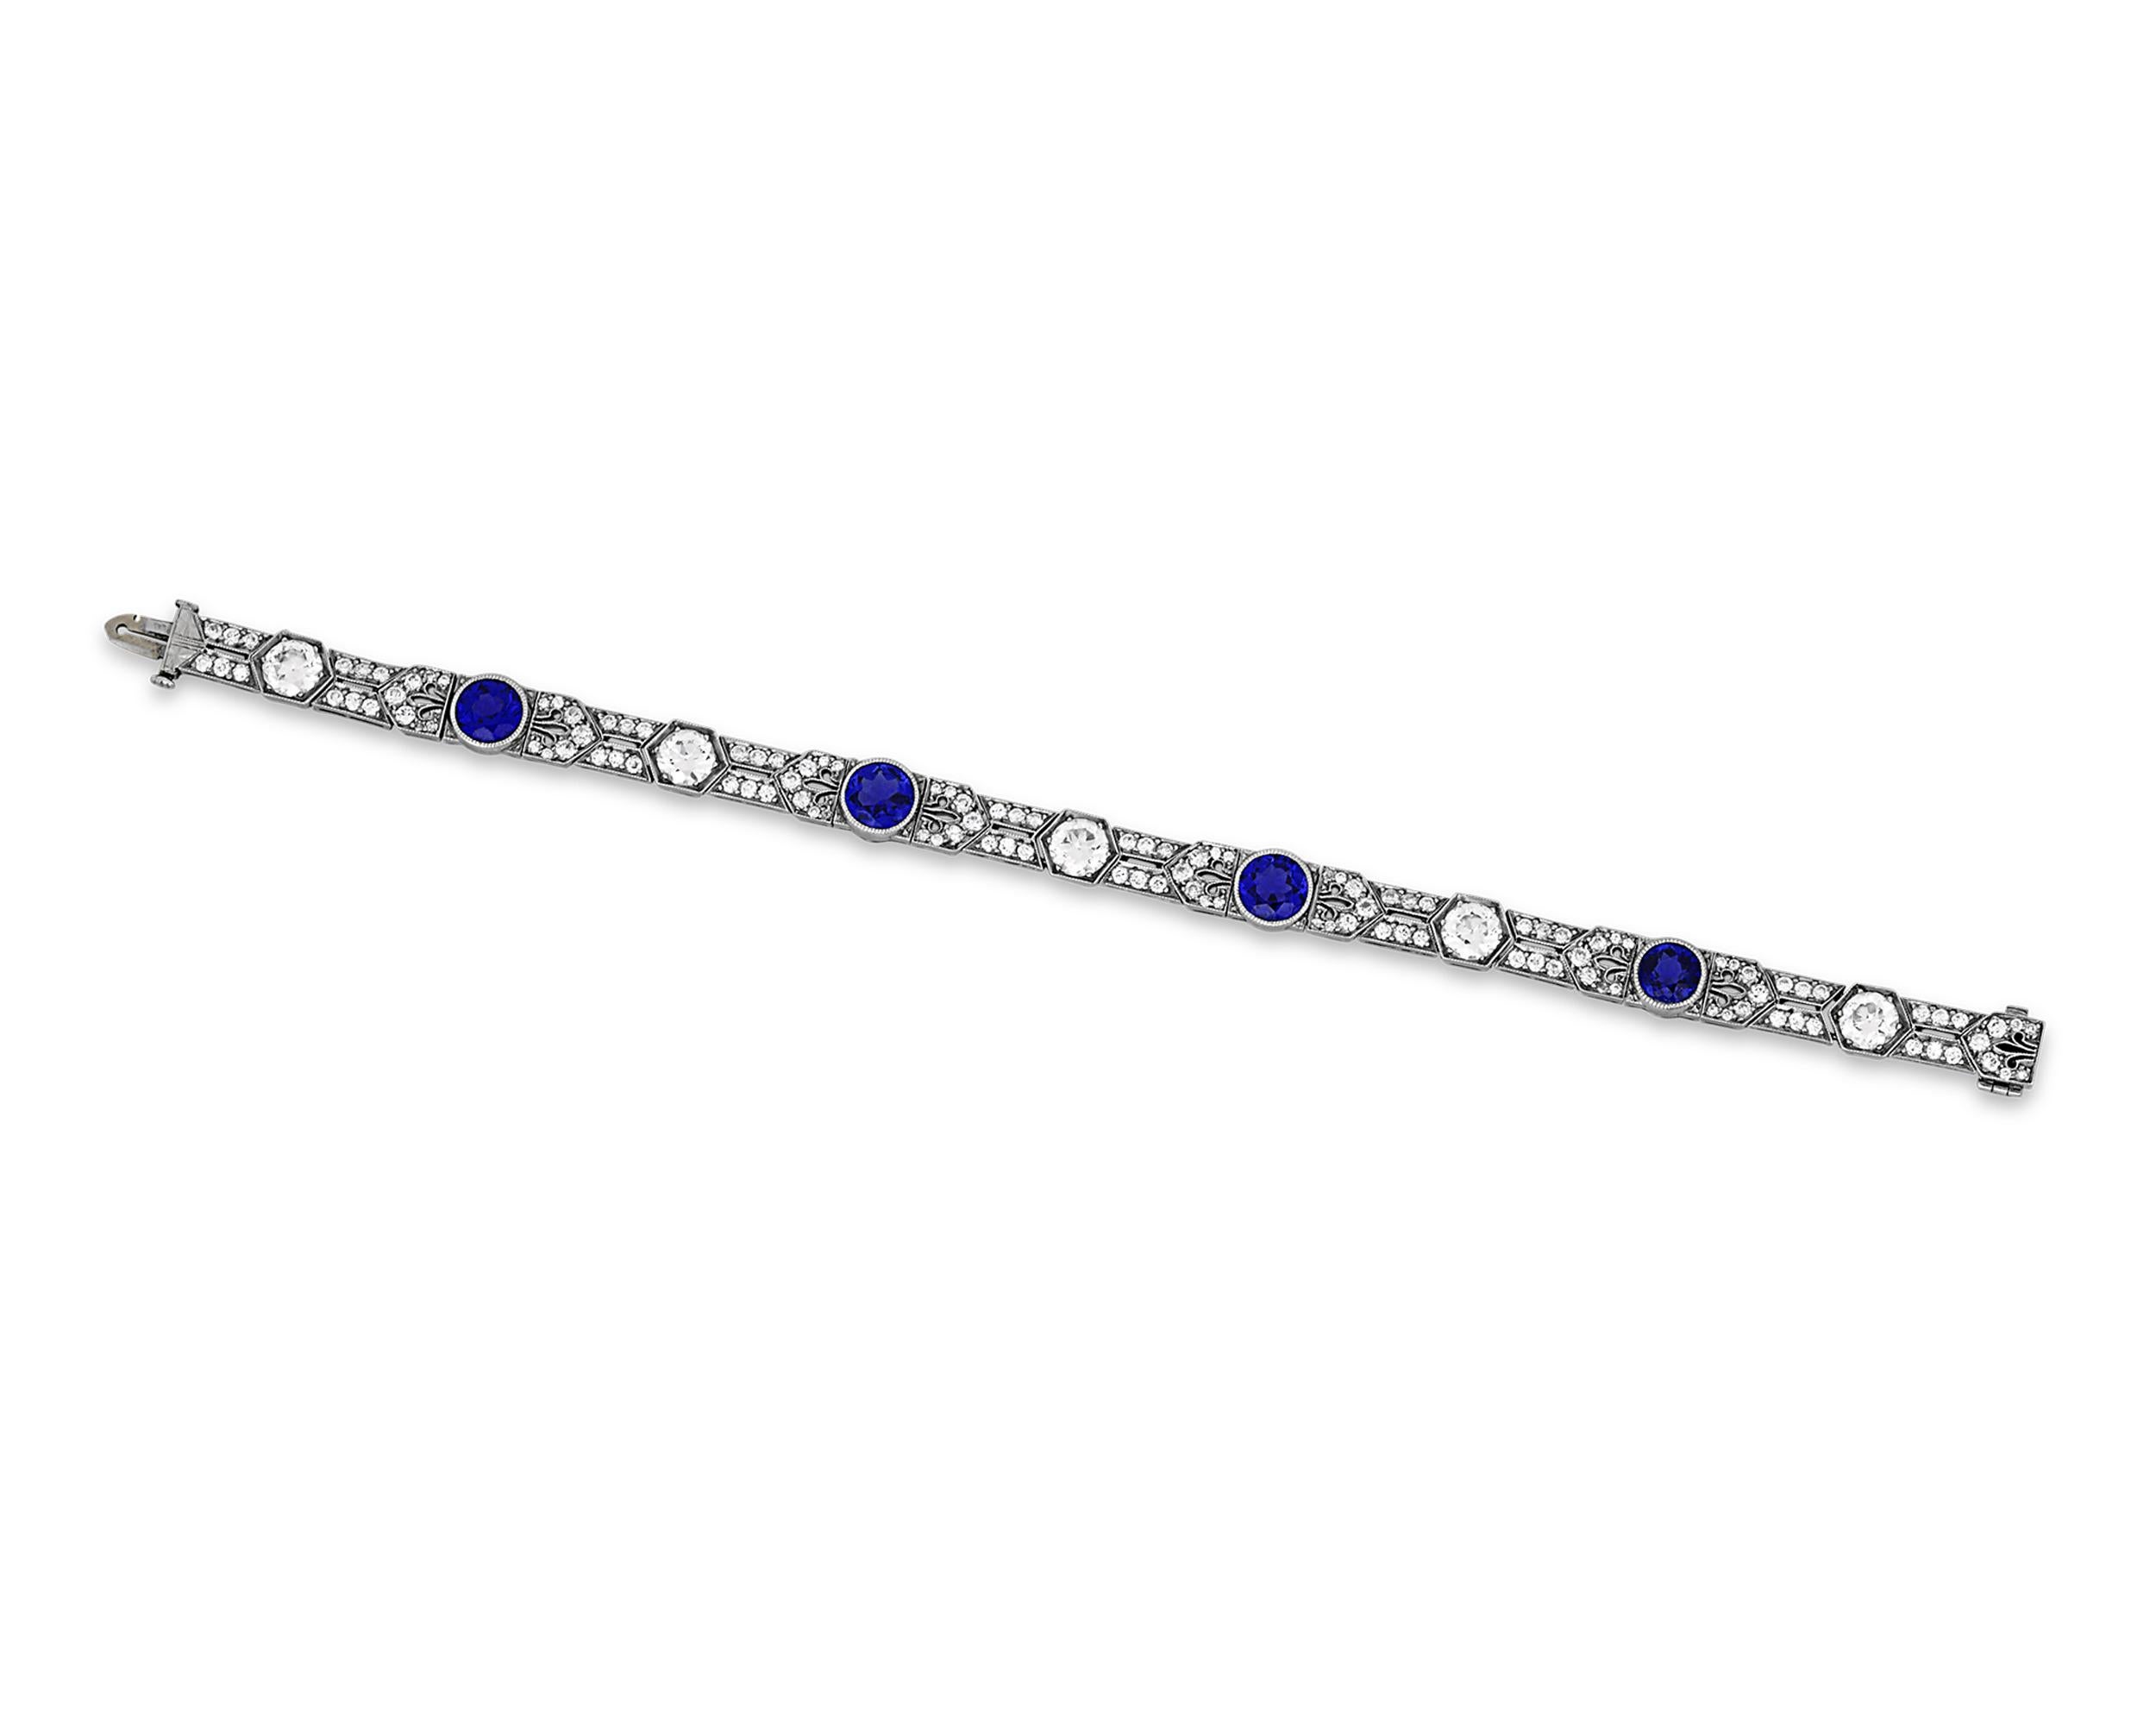 Vier bemerkenswerte Yogo-Saphire sind die Stars dieses erstaunlichen Art-Déco-Armbands von Tiffany & Co. Die Juwelen, die zusammen 4,68 Karat wiegen, sind von der AGL und der GIA als unbehandelt zertifiziert und gehören damit zu den feinsten